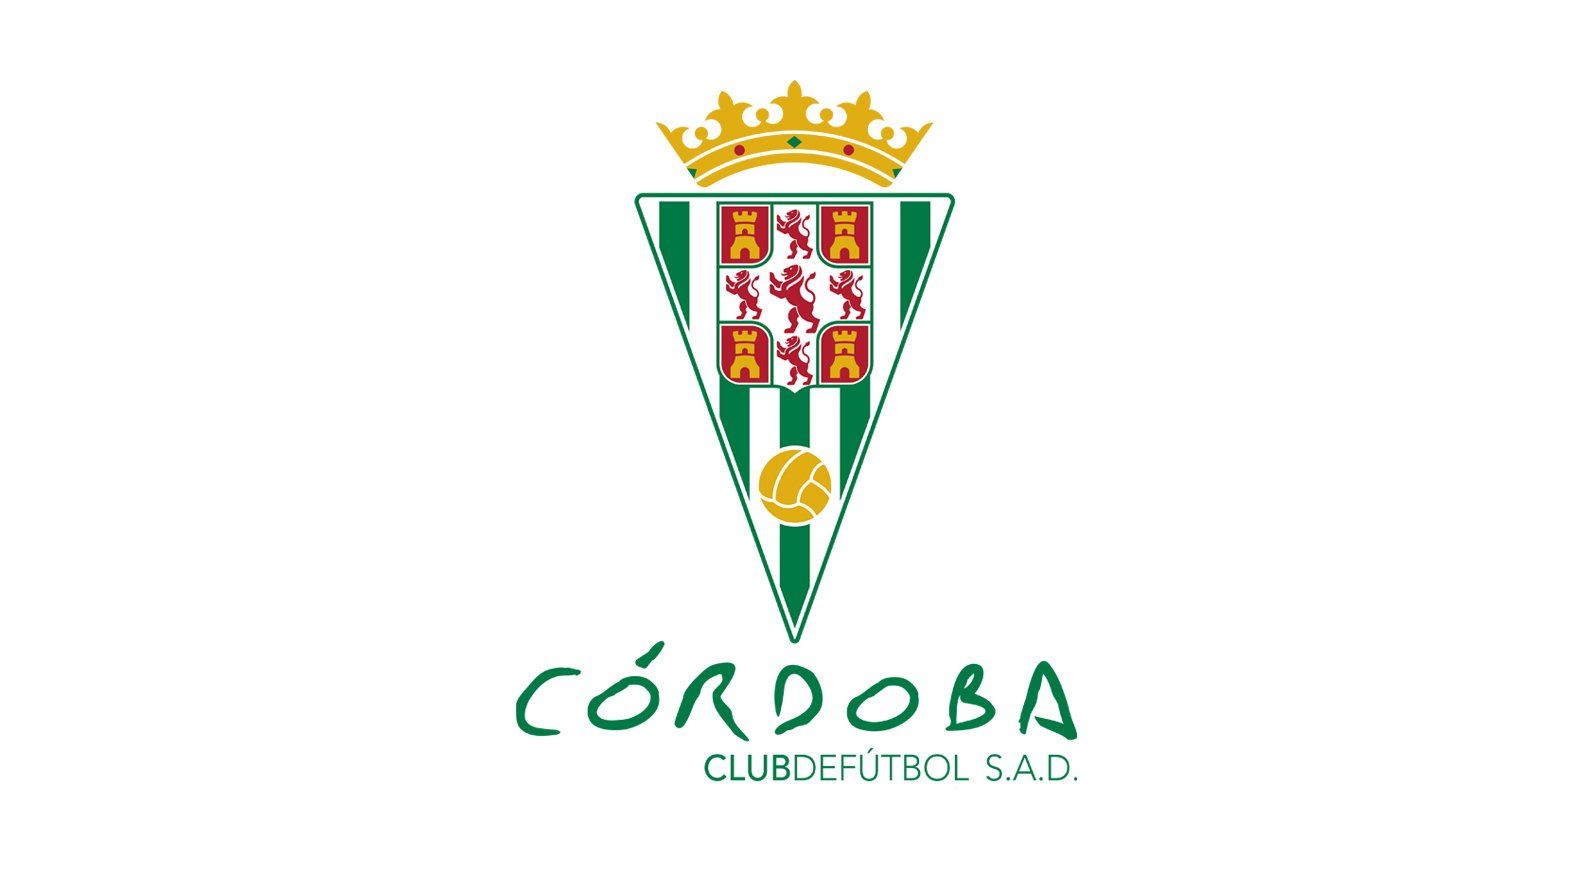 ¿Dónde juega el Córdoba Club de Fútbol